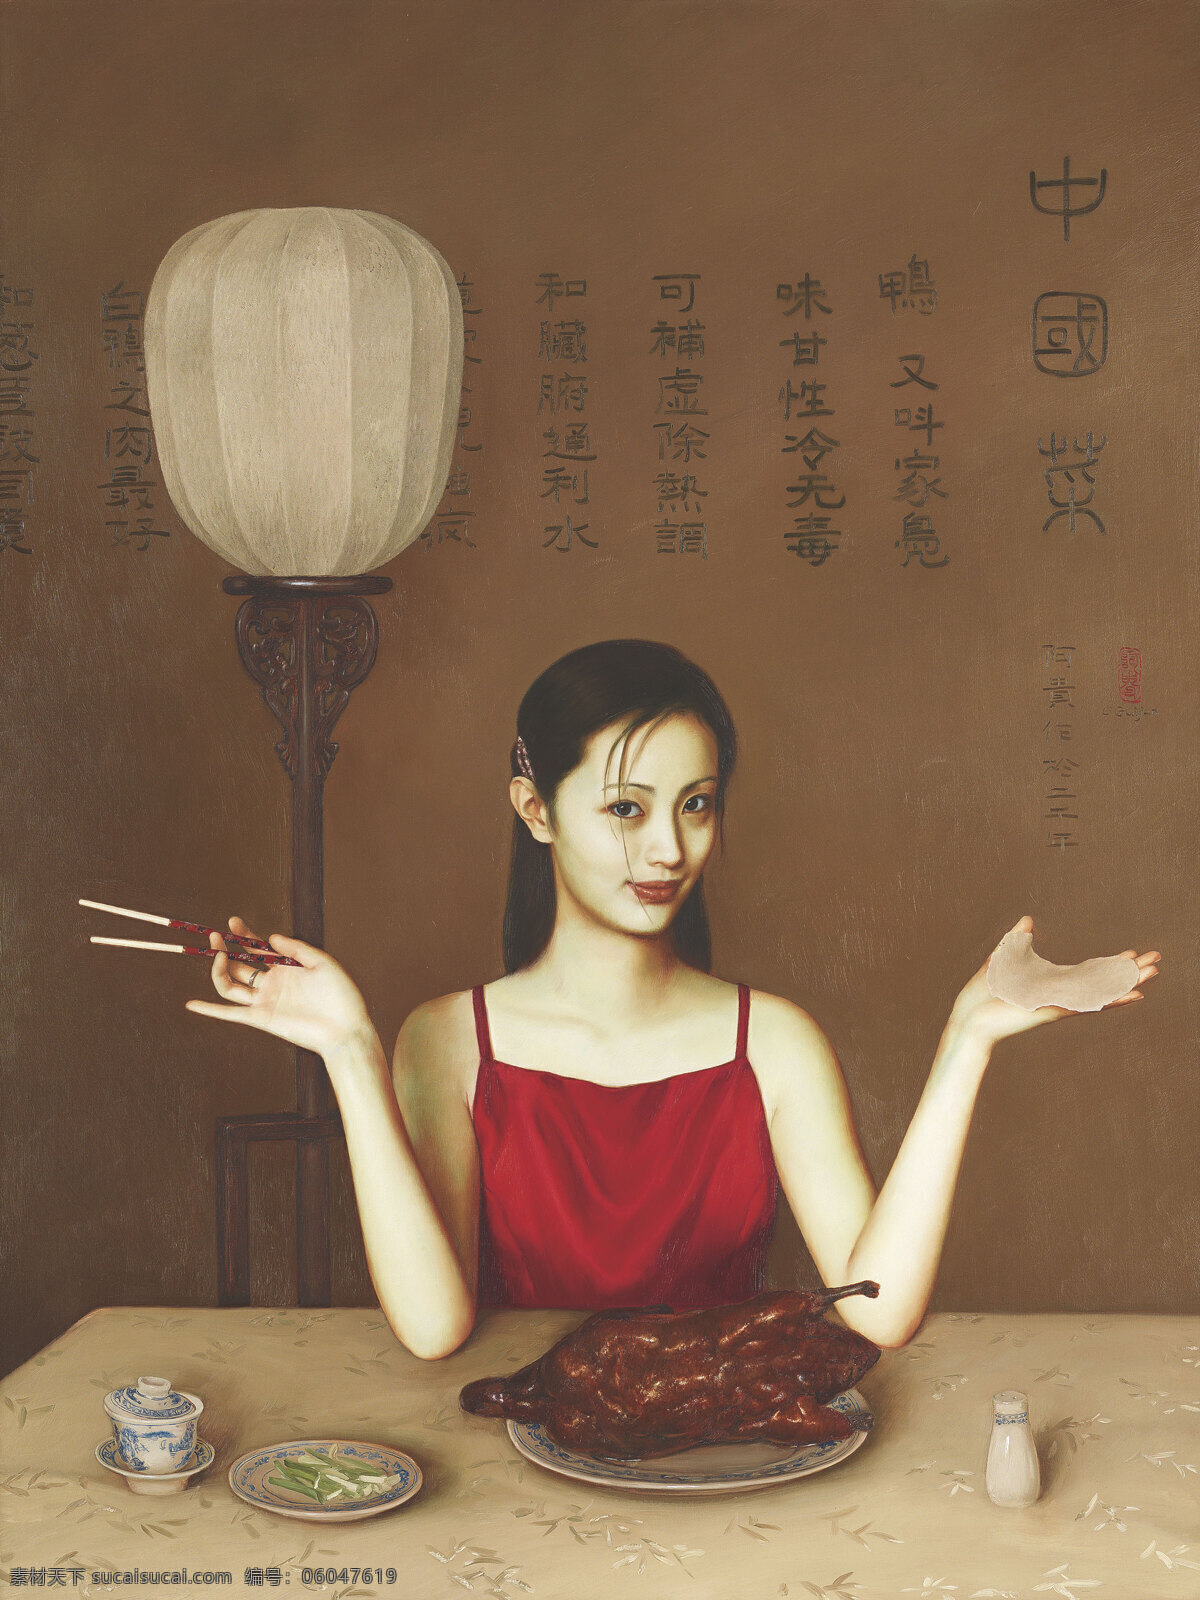 中国茶 李贵君作品 红衣少女 北京考鸭 一小碟香葱 现代油画 油画 文化艺术 绘画书法